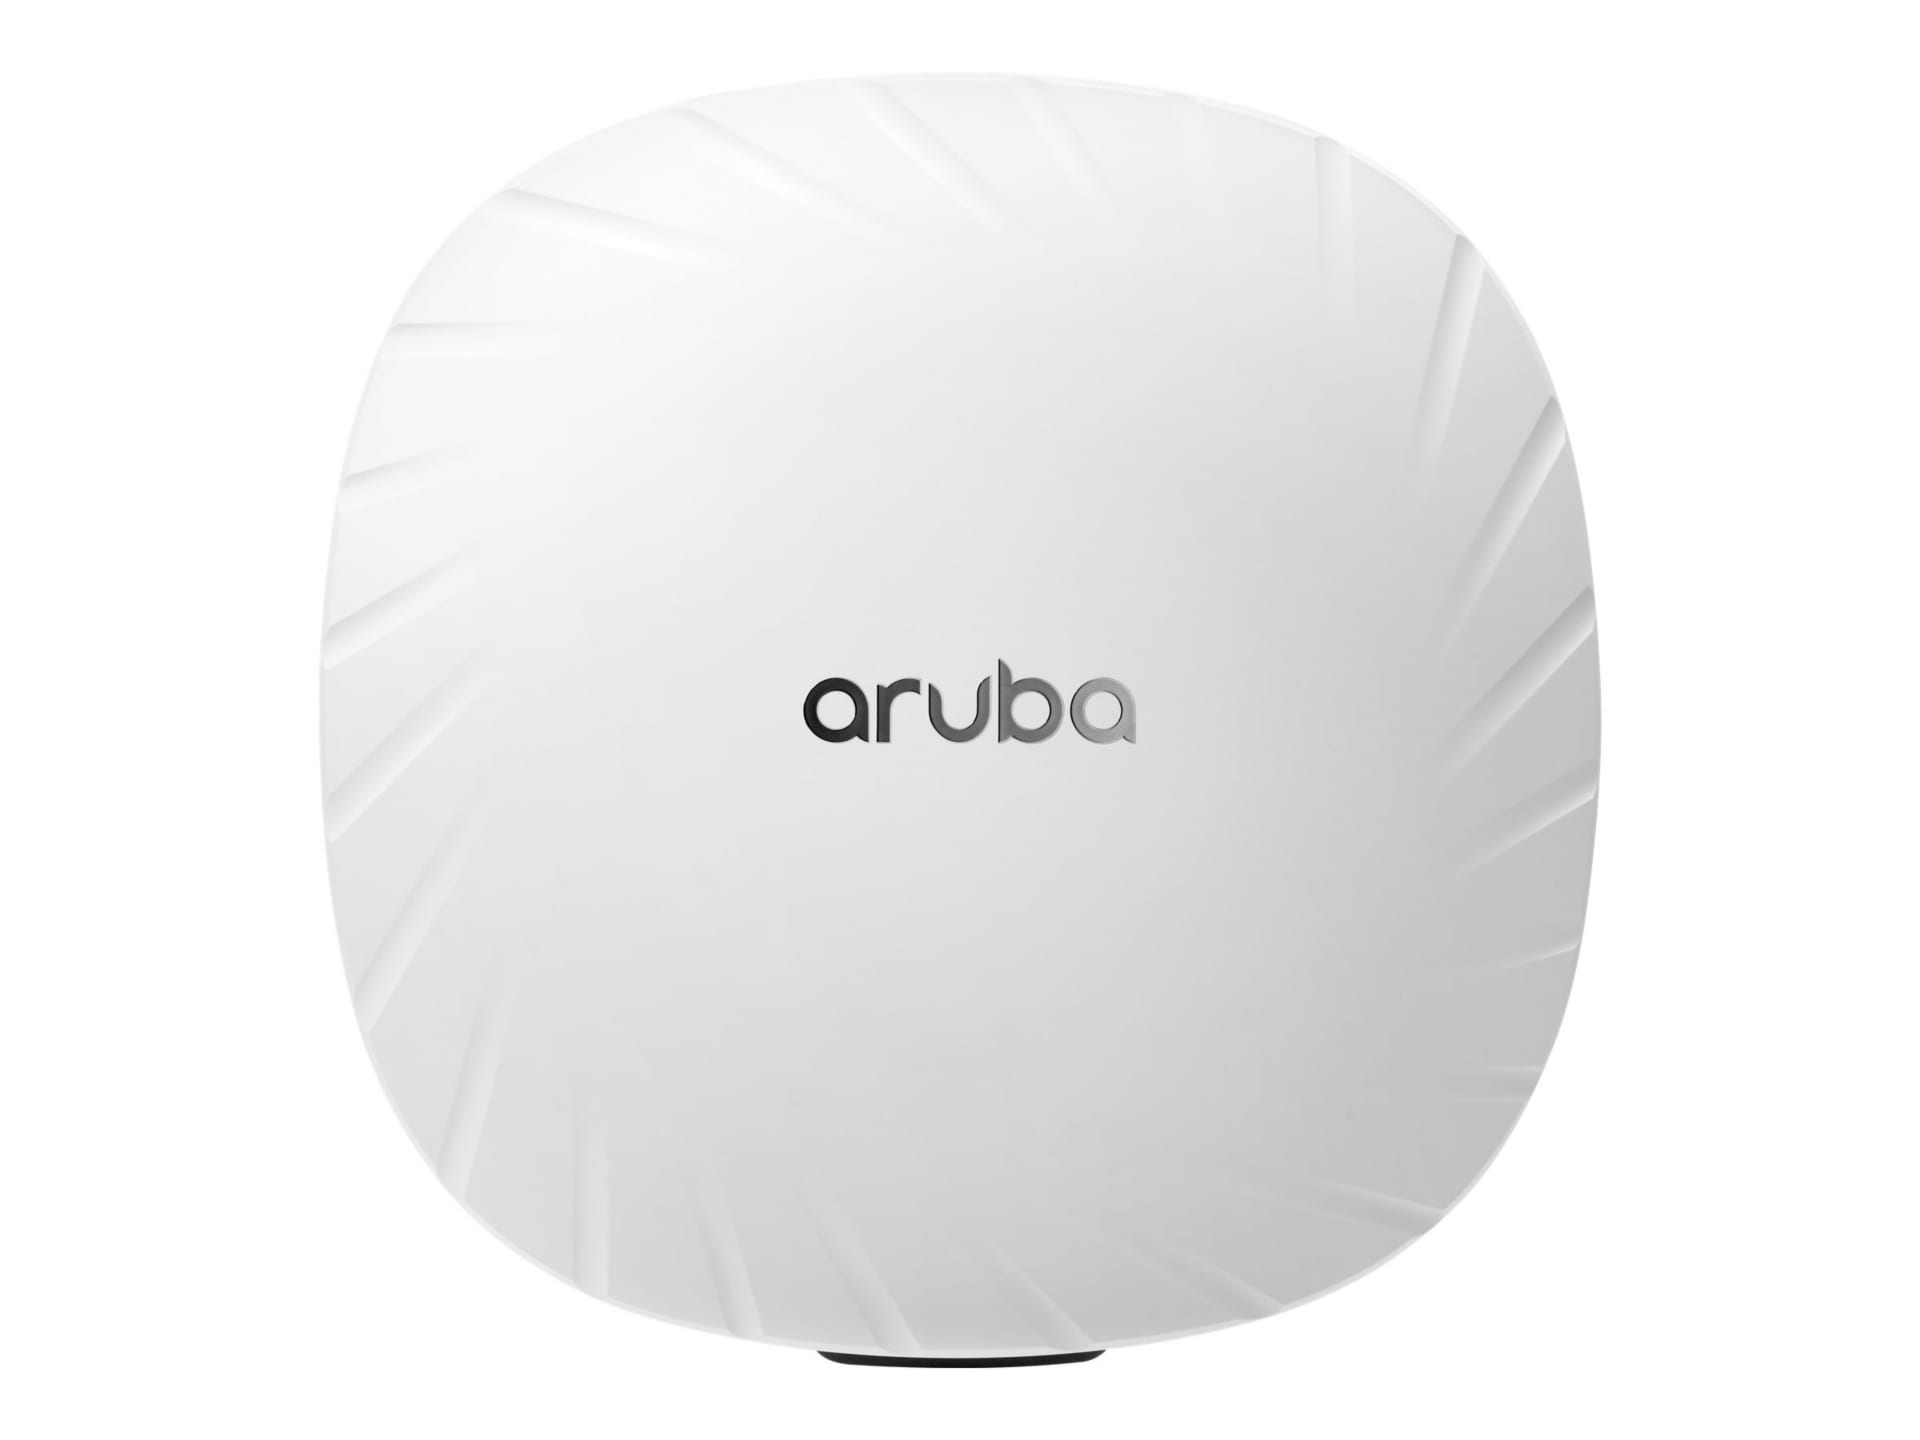 HPE Aruba AP-535 (US) TAA - Campus - wireless access point ZigBee, Bluetooth, Wi-Fi 6 - TAA Compliant